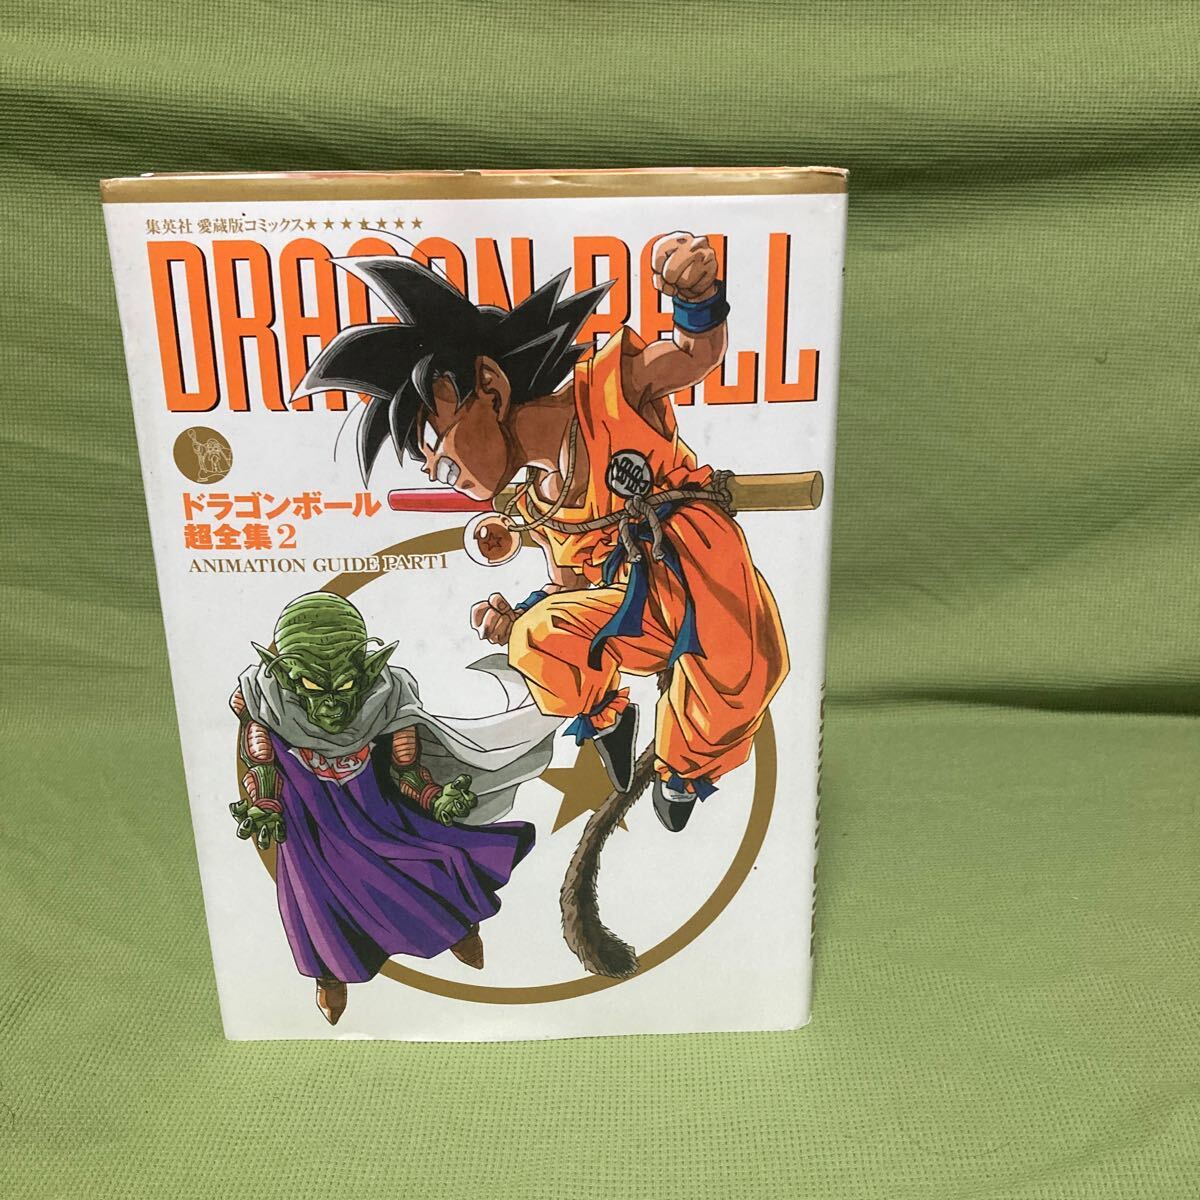 ドラゴンボール 鳥山明 集英社愛蔵版コミックス ドラゴンボール超全集 2の画像1